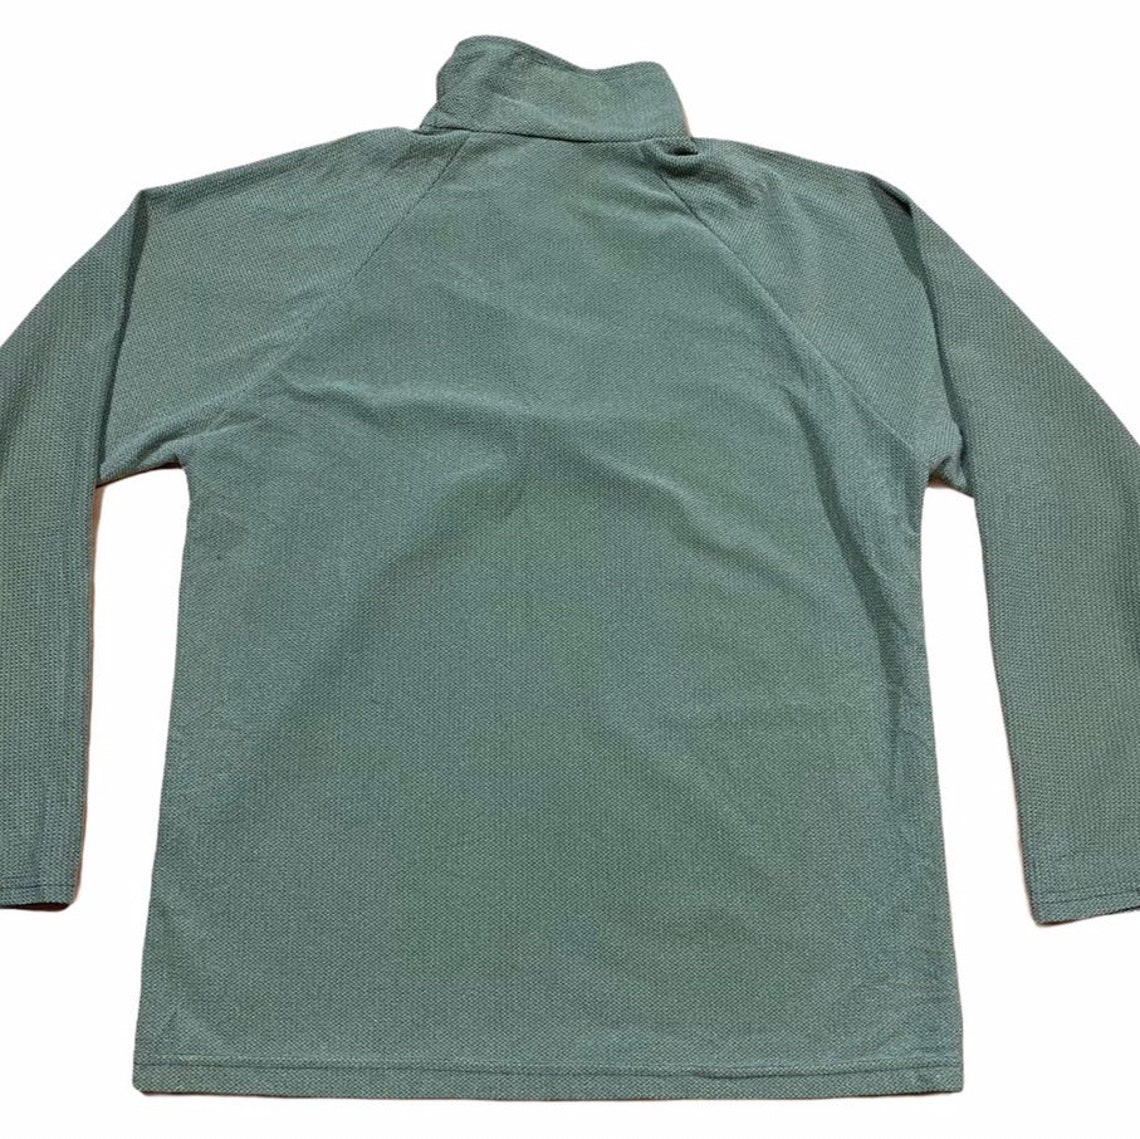 Umbro Quarter Zip Sweatshirt - Etsy UK